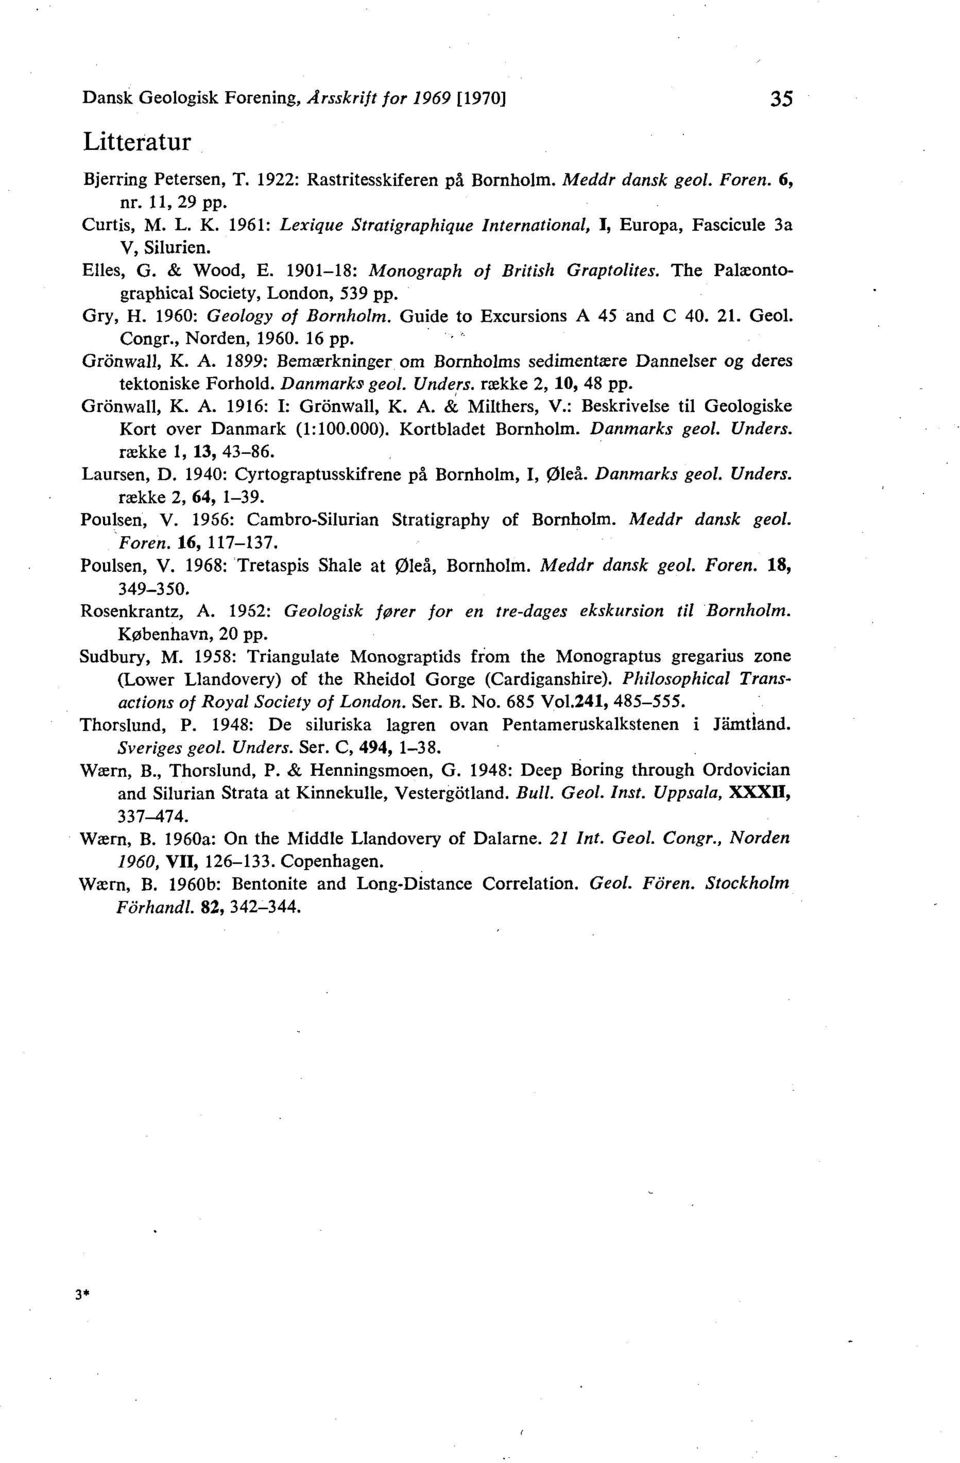 1960: Geology of Bornholm. Guide to Excursions A 45 and C 40. 21. Geol. Congr., Norden, 1960. 16 pp. Gronwall, K. A. 1899: Bemærkninger om Bornholms sedimentære Dannelser og deres tektoniske Forhold.